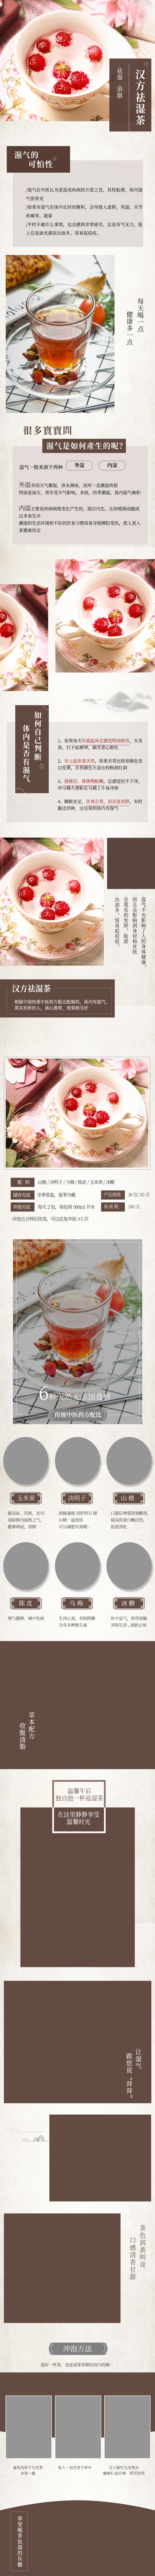 中国 风 祛 湿 茶 详情 页 描述 花茶 祛湿茶 中国风 花茶详情 茶叶 食品茶饮 茶叶详情页